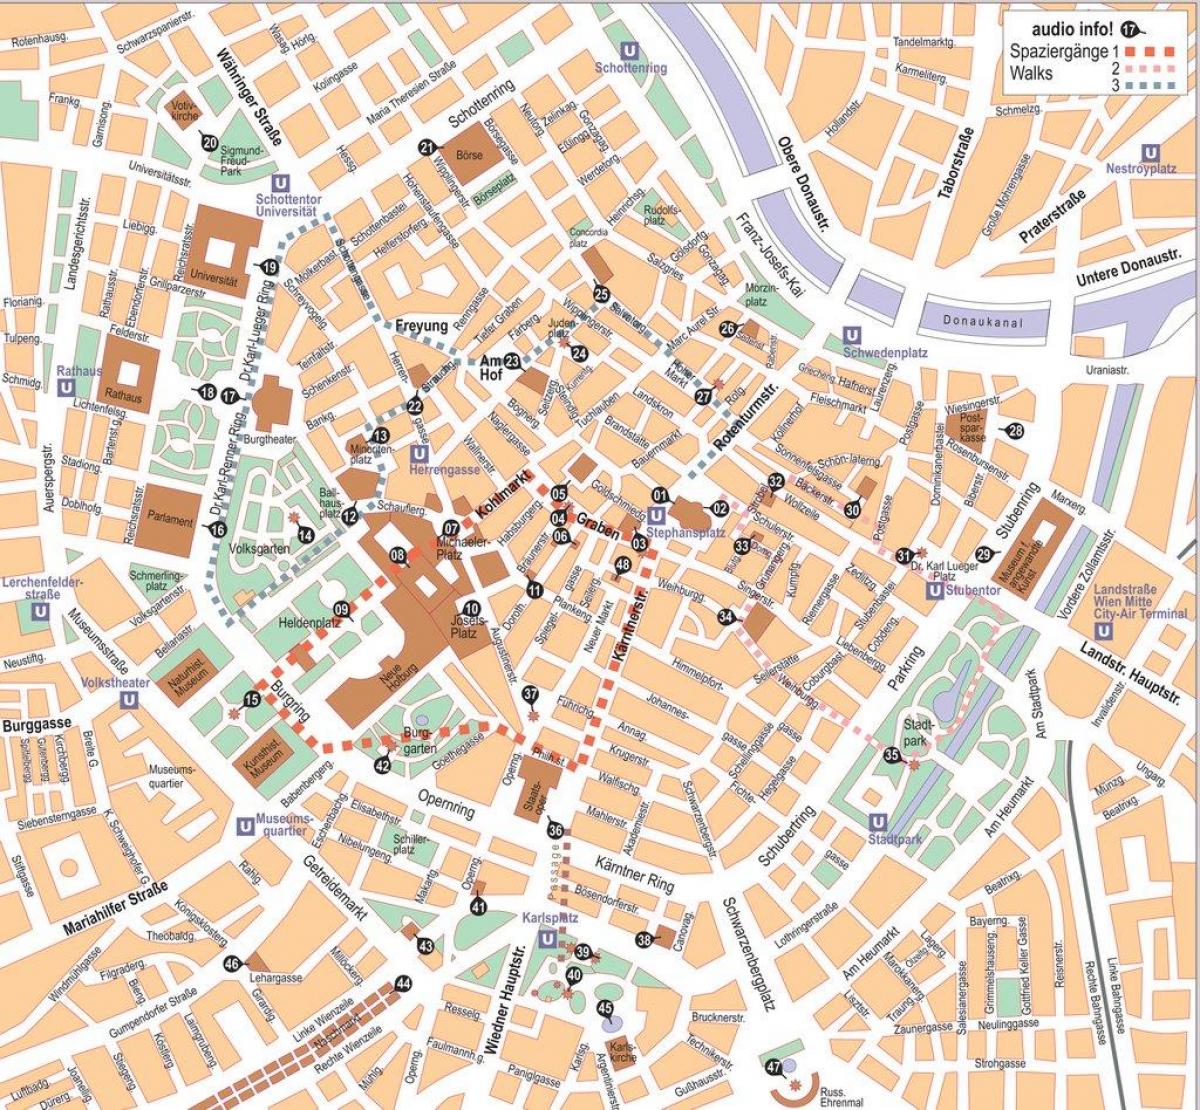 Mapu Viedne offline mesta